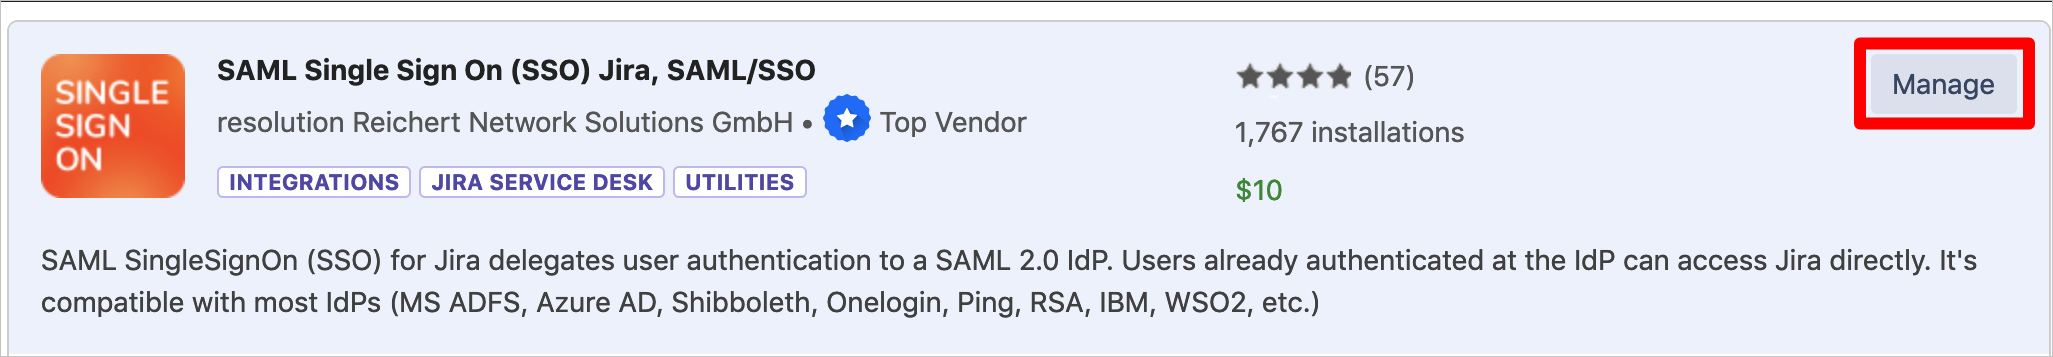 Capture d’écran montrant l’application « SAML Single Sign On (SSO) Jira, SAML/SSO » avec le bouton « Manage » sélectionné